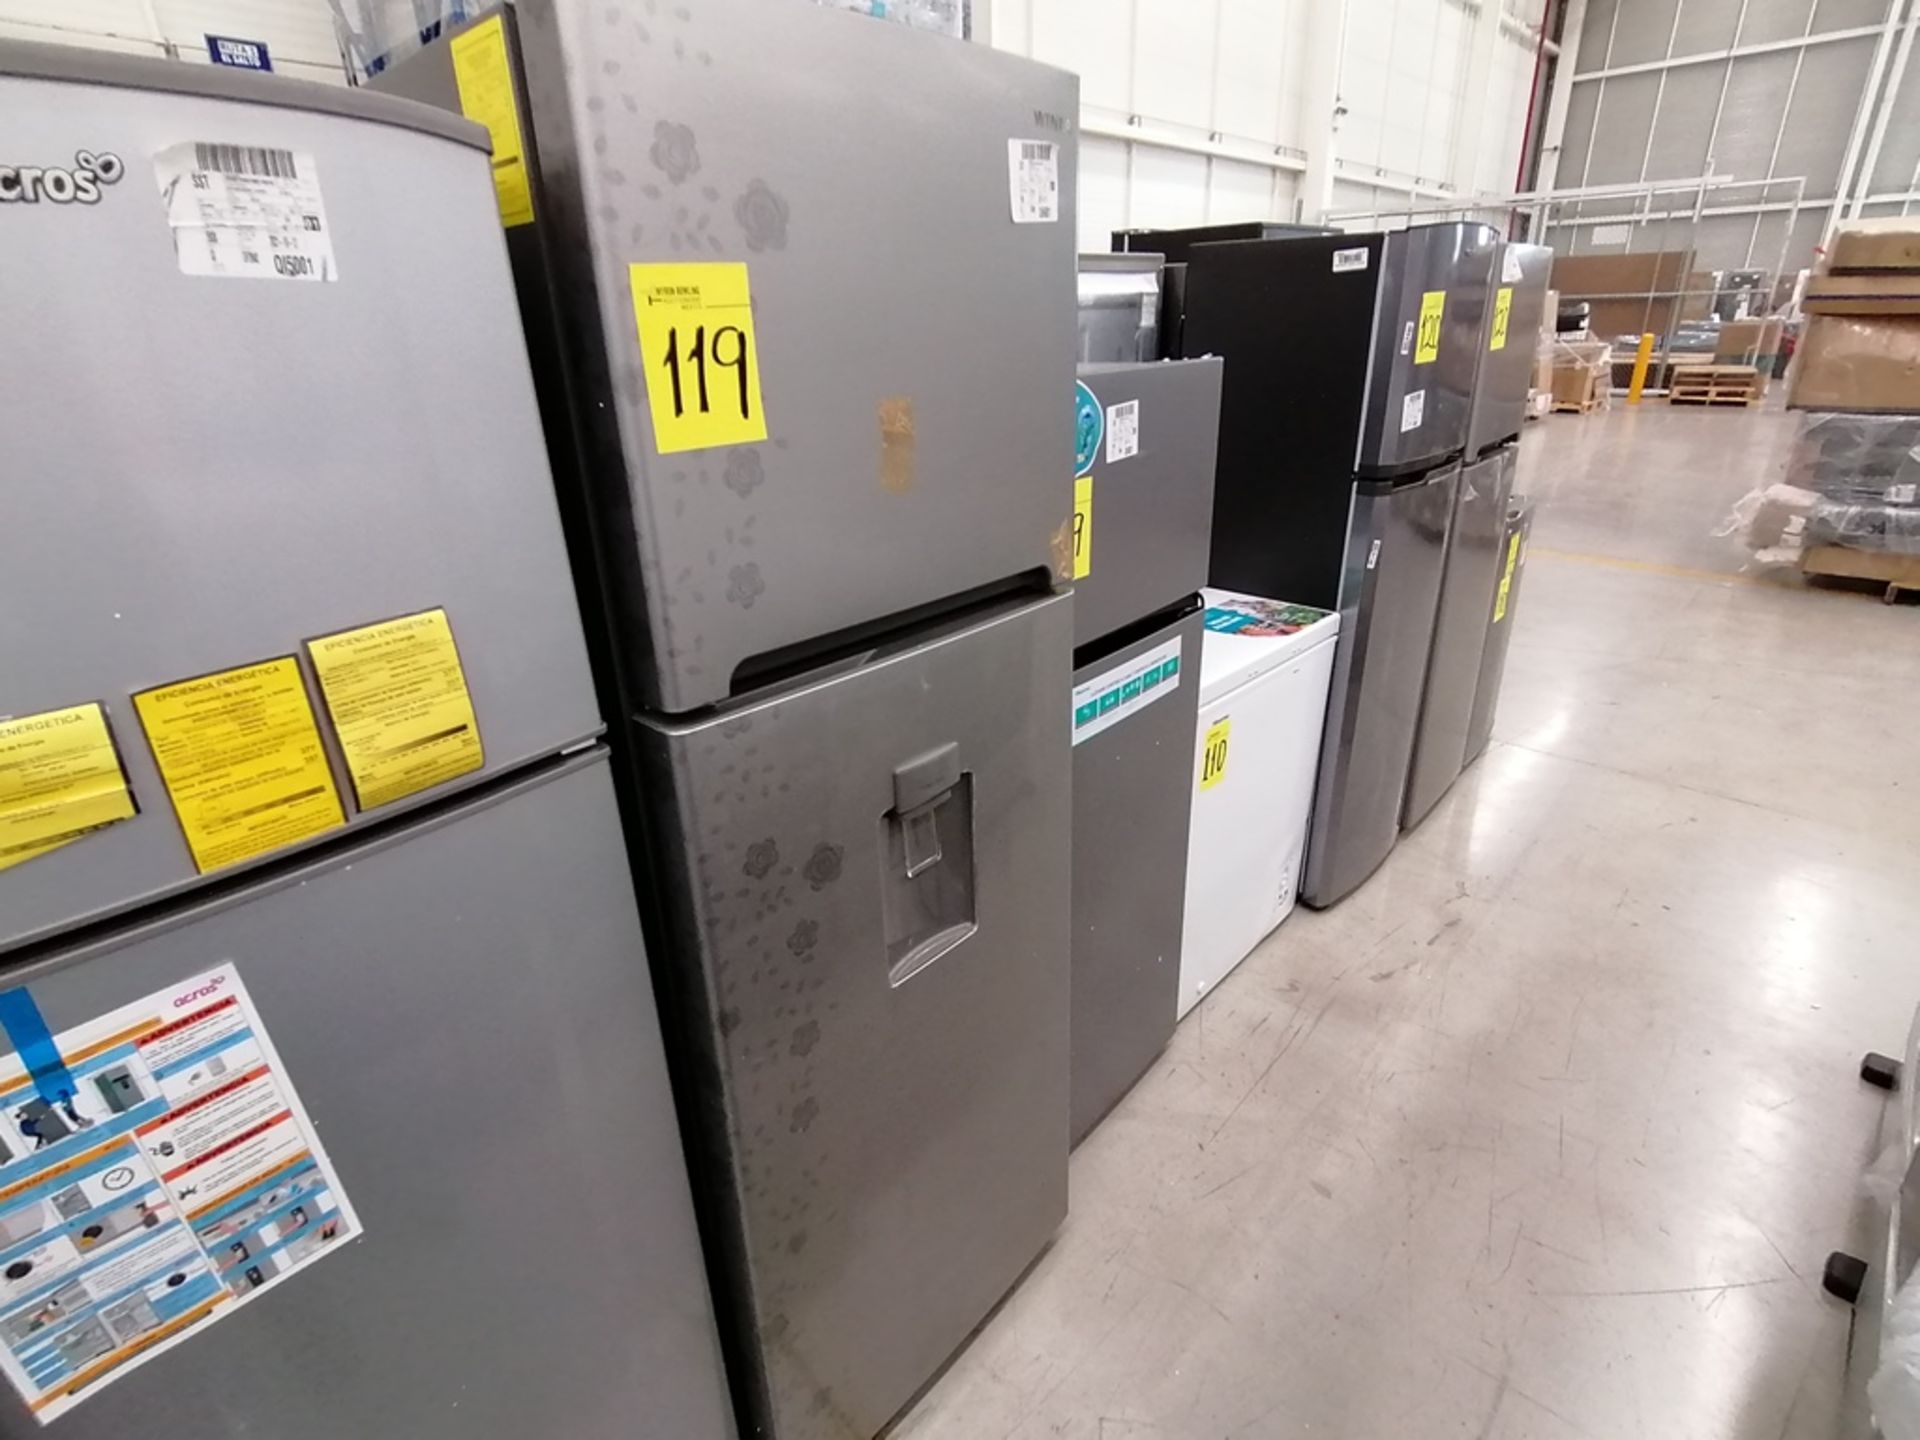 Lote de 2 refrigeradores incluye: 1 Refrigerador, Marca Winia, Modelo DFR40510GNDG, Serie MR21YN107 - Image 9 of 15